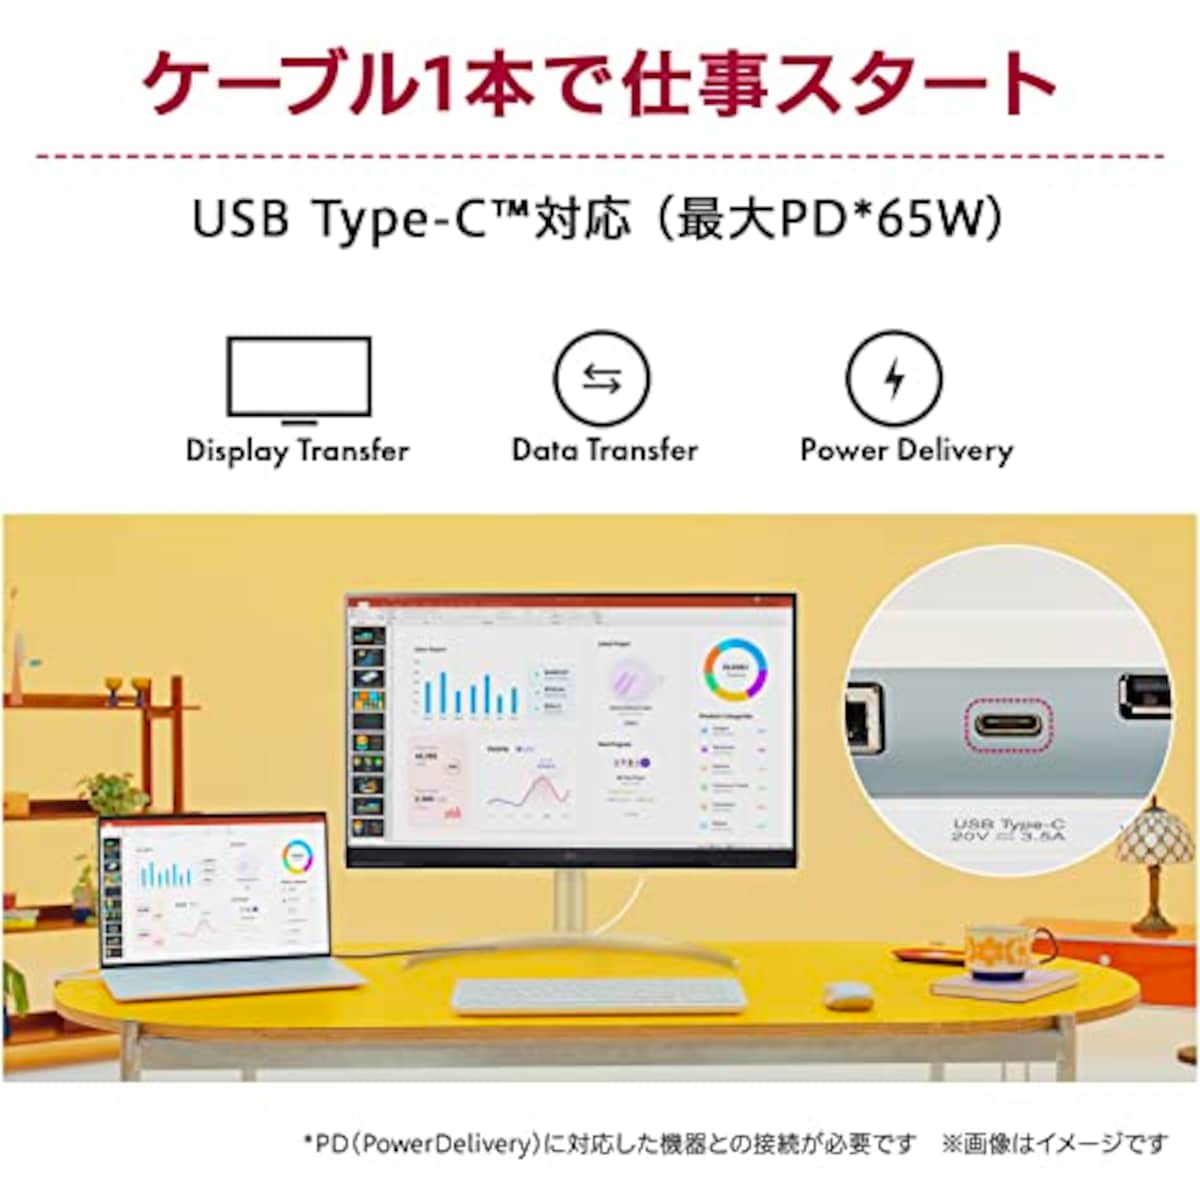  LG スマートモニター / 32SQ730S-W 31.5インチ/作業効率アップ、ビジネス、映画、VOD視聴/ 4K / webOS22搭載 / VA/アンチグレア/AirPlay 2 /チルト、高さ調整対応/USB Type-C､eARC対応HDMI / 3年安心・無輝点保証画像7 